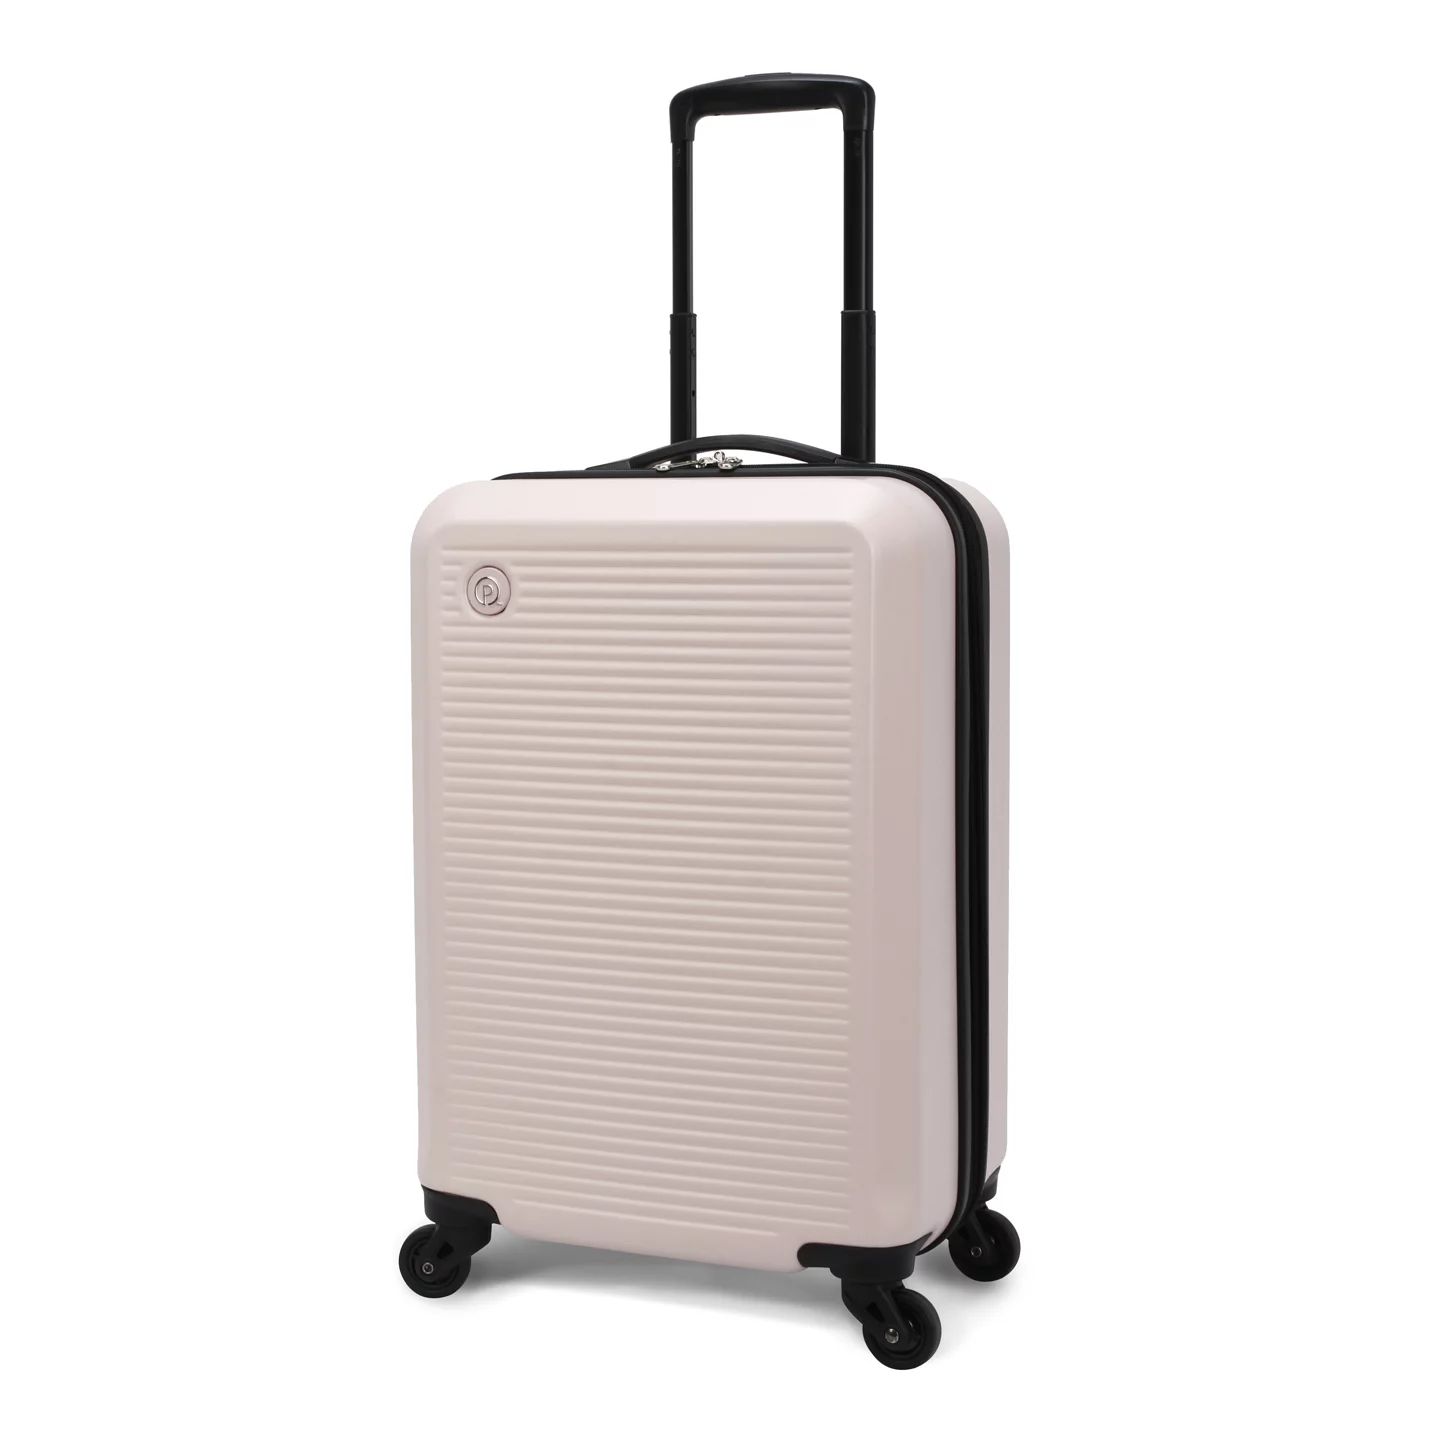 Protege 20" Hardside Carry-on Spinner Luggage, Matte Pink - Walmart.com | Walmart (US)